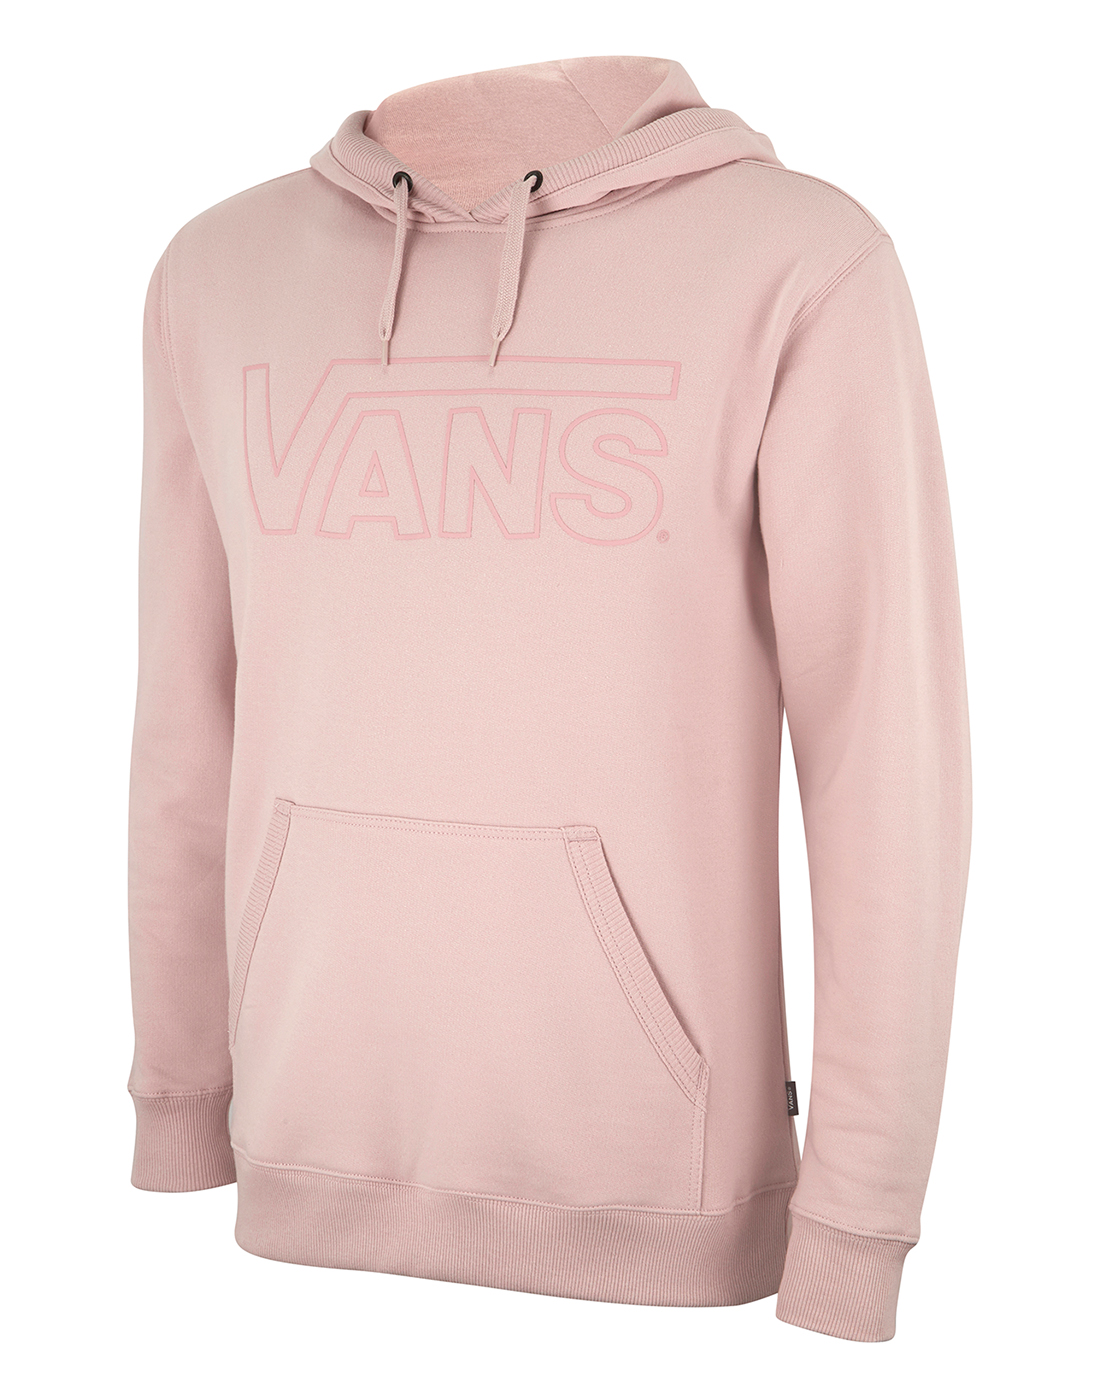 mens pink vans hoodie